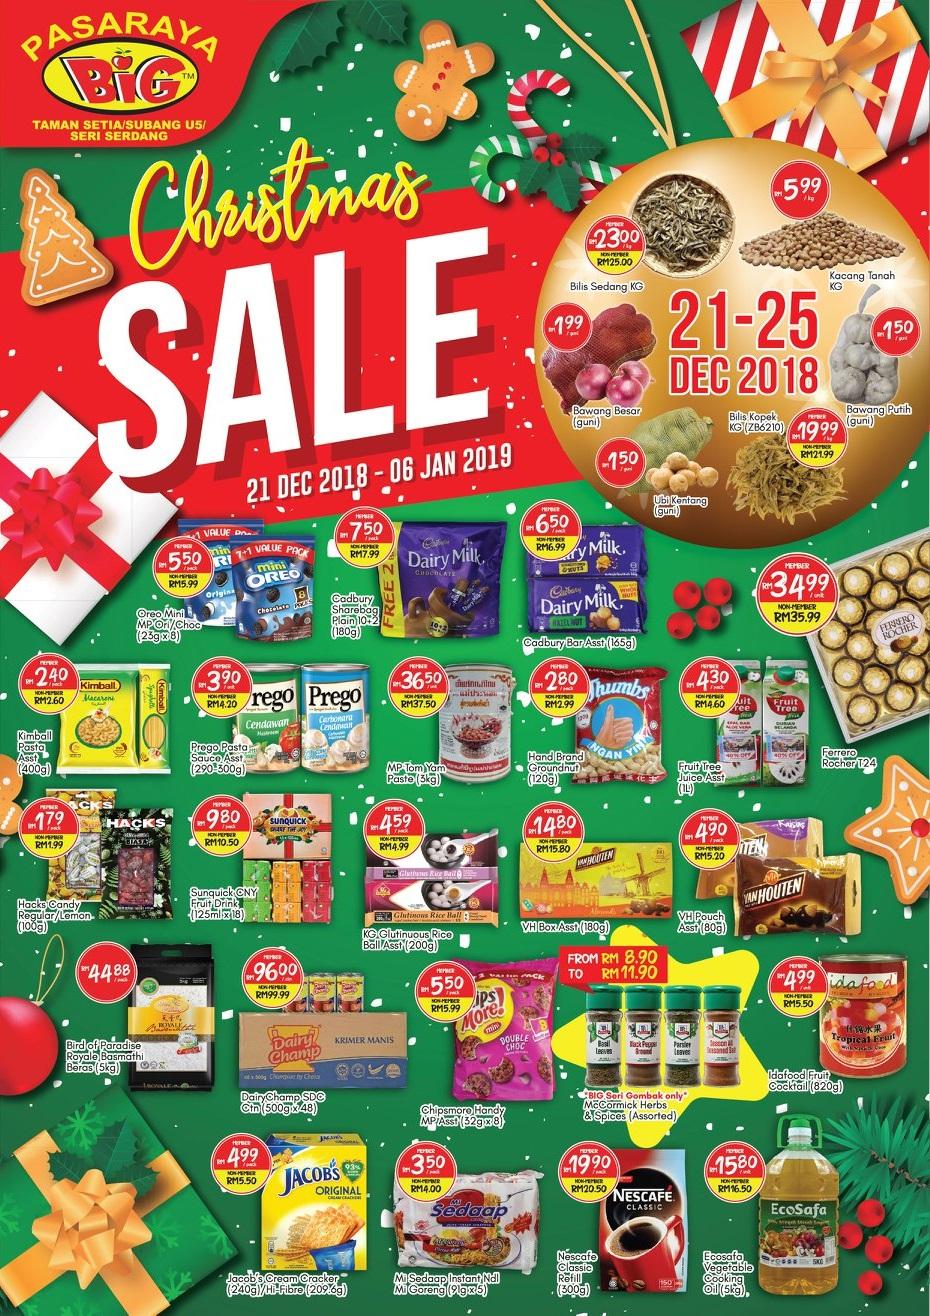 Pasaraya BiG Christmas Sale Promotion at Subang U5, Taman Setia & Seri Serdang (21 December 2018 - 6 January 2019)